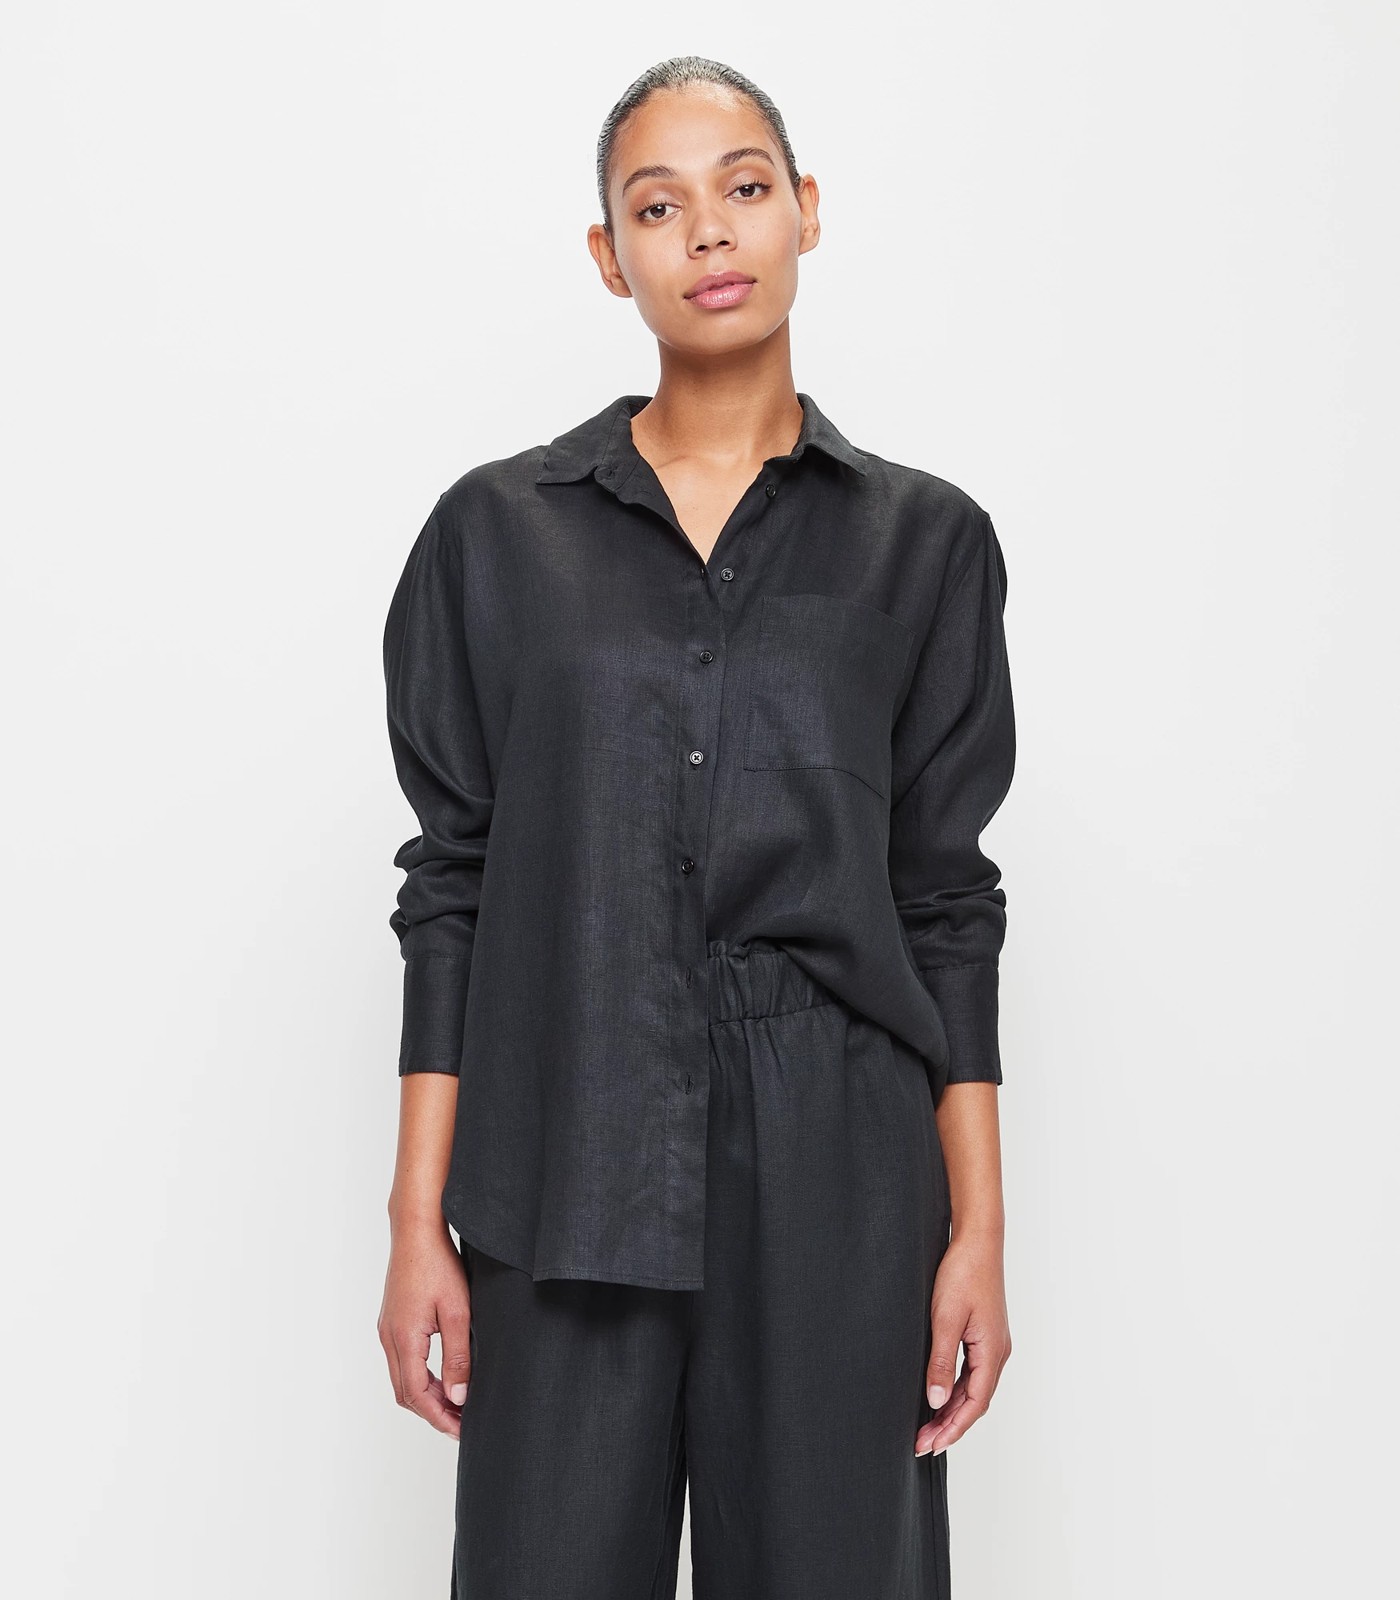 European Linen Long Sleeve Shirt - Black